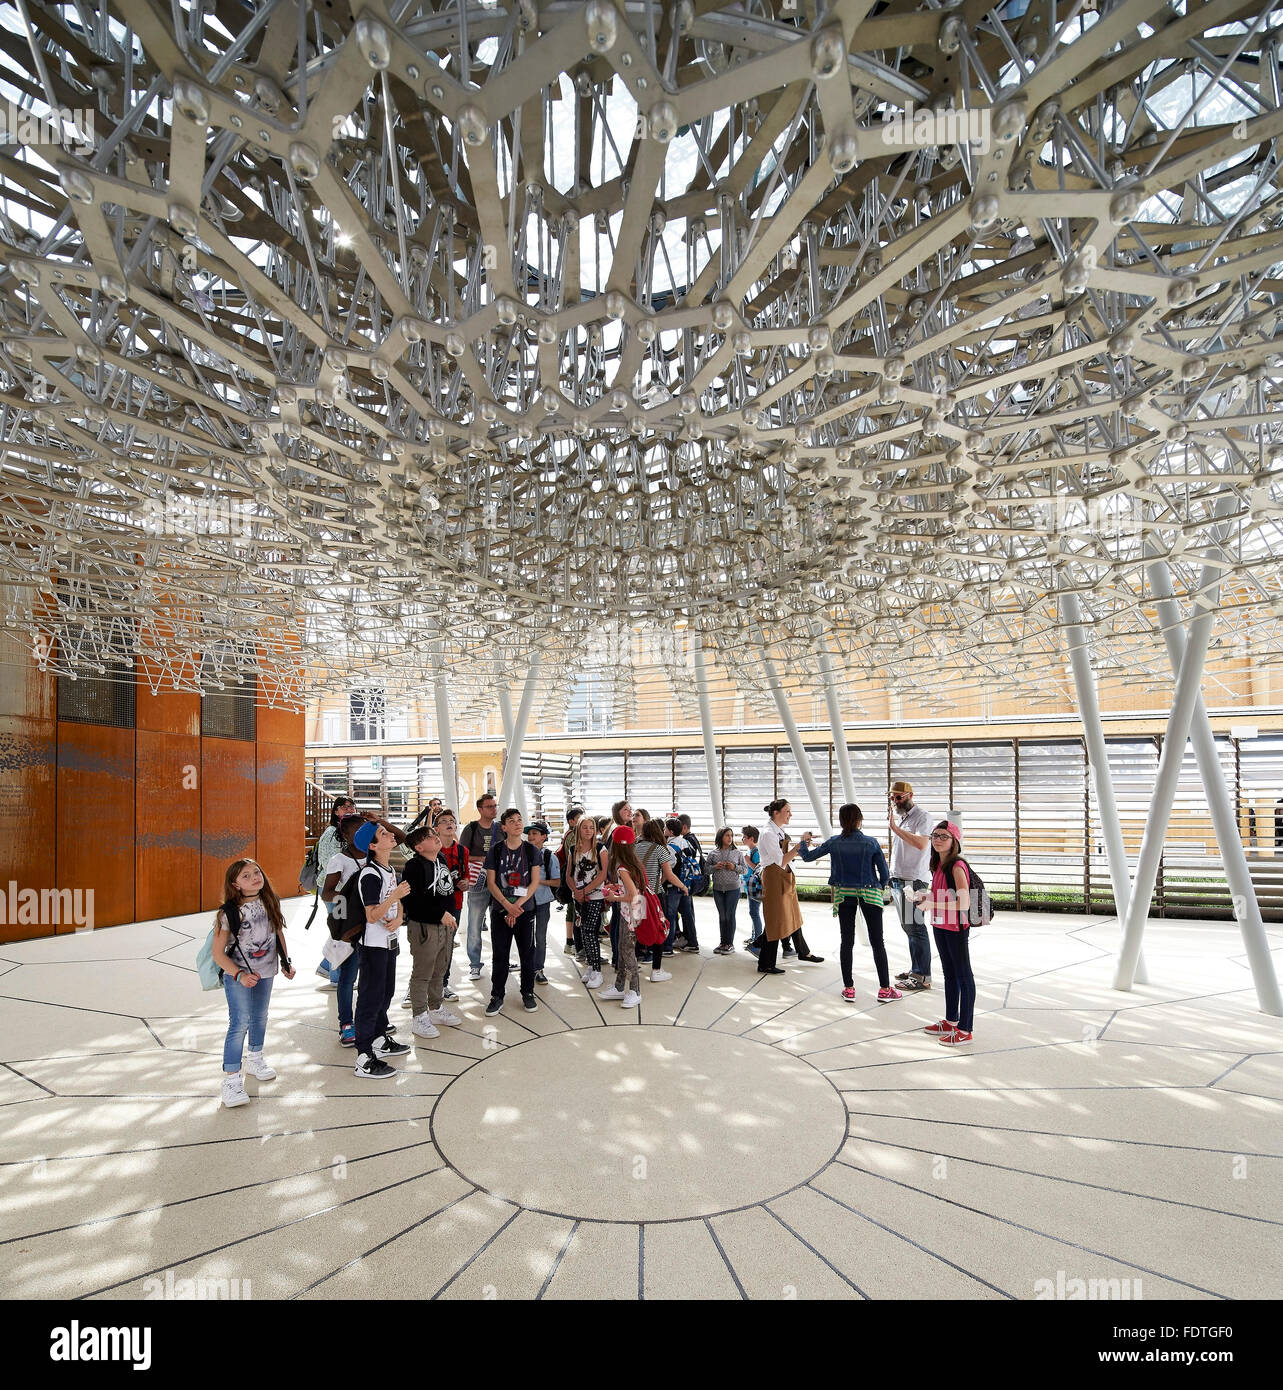 Terrasse mit Besuchern unter Bienenstock Struktur. Mailand Expo 2015, britischen Pavillon, Mailand, Italien. Architekt: Wolfgang Buttress, 2015. Stockfoto